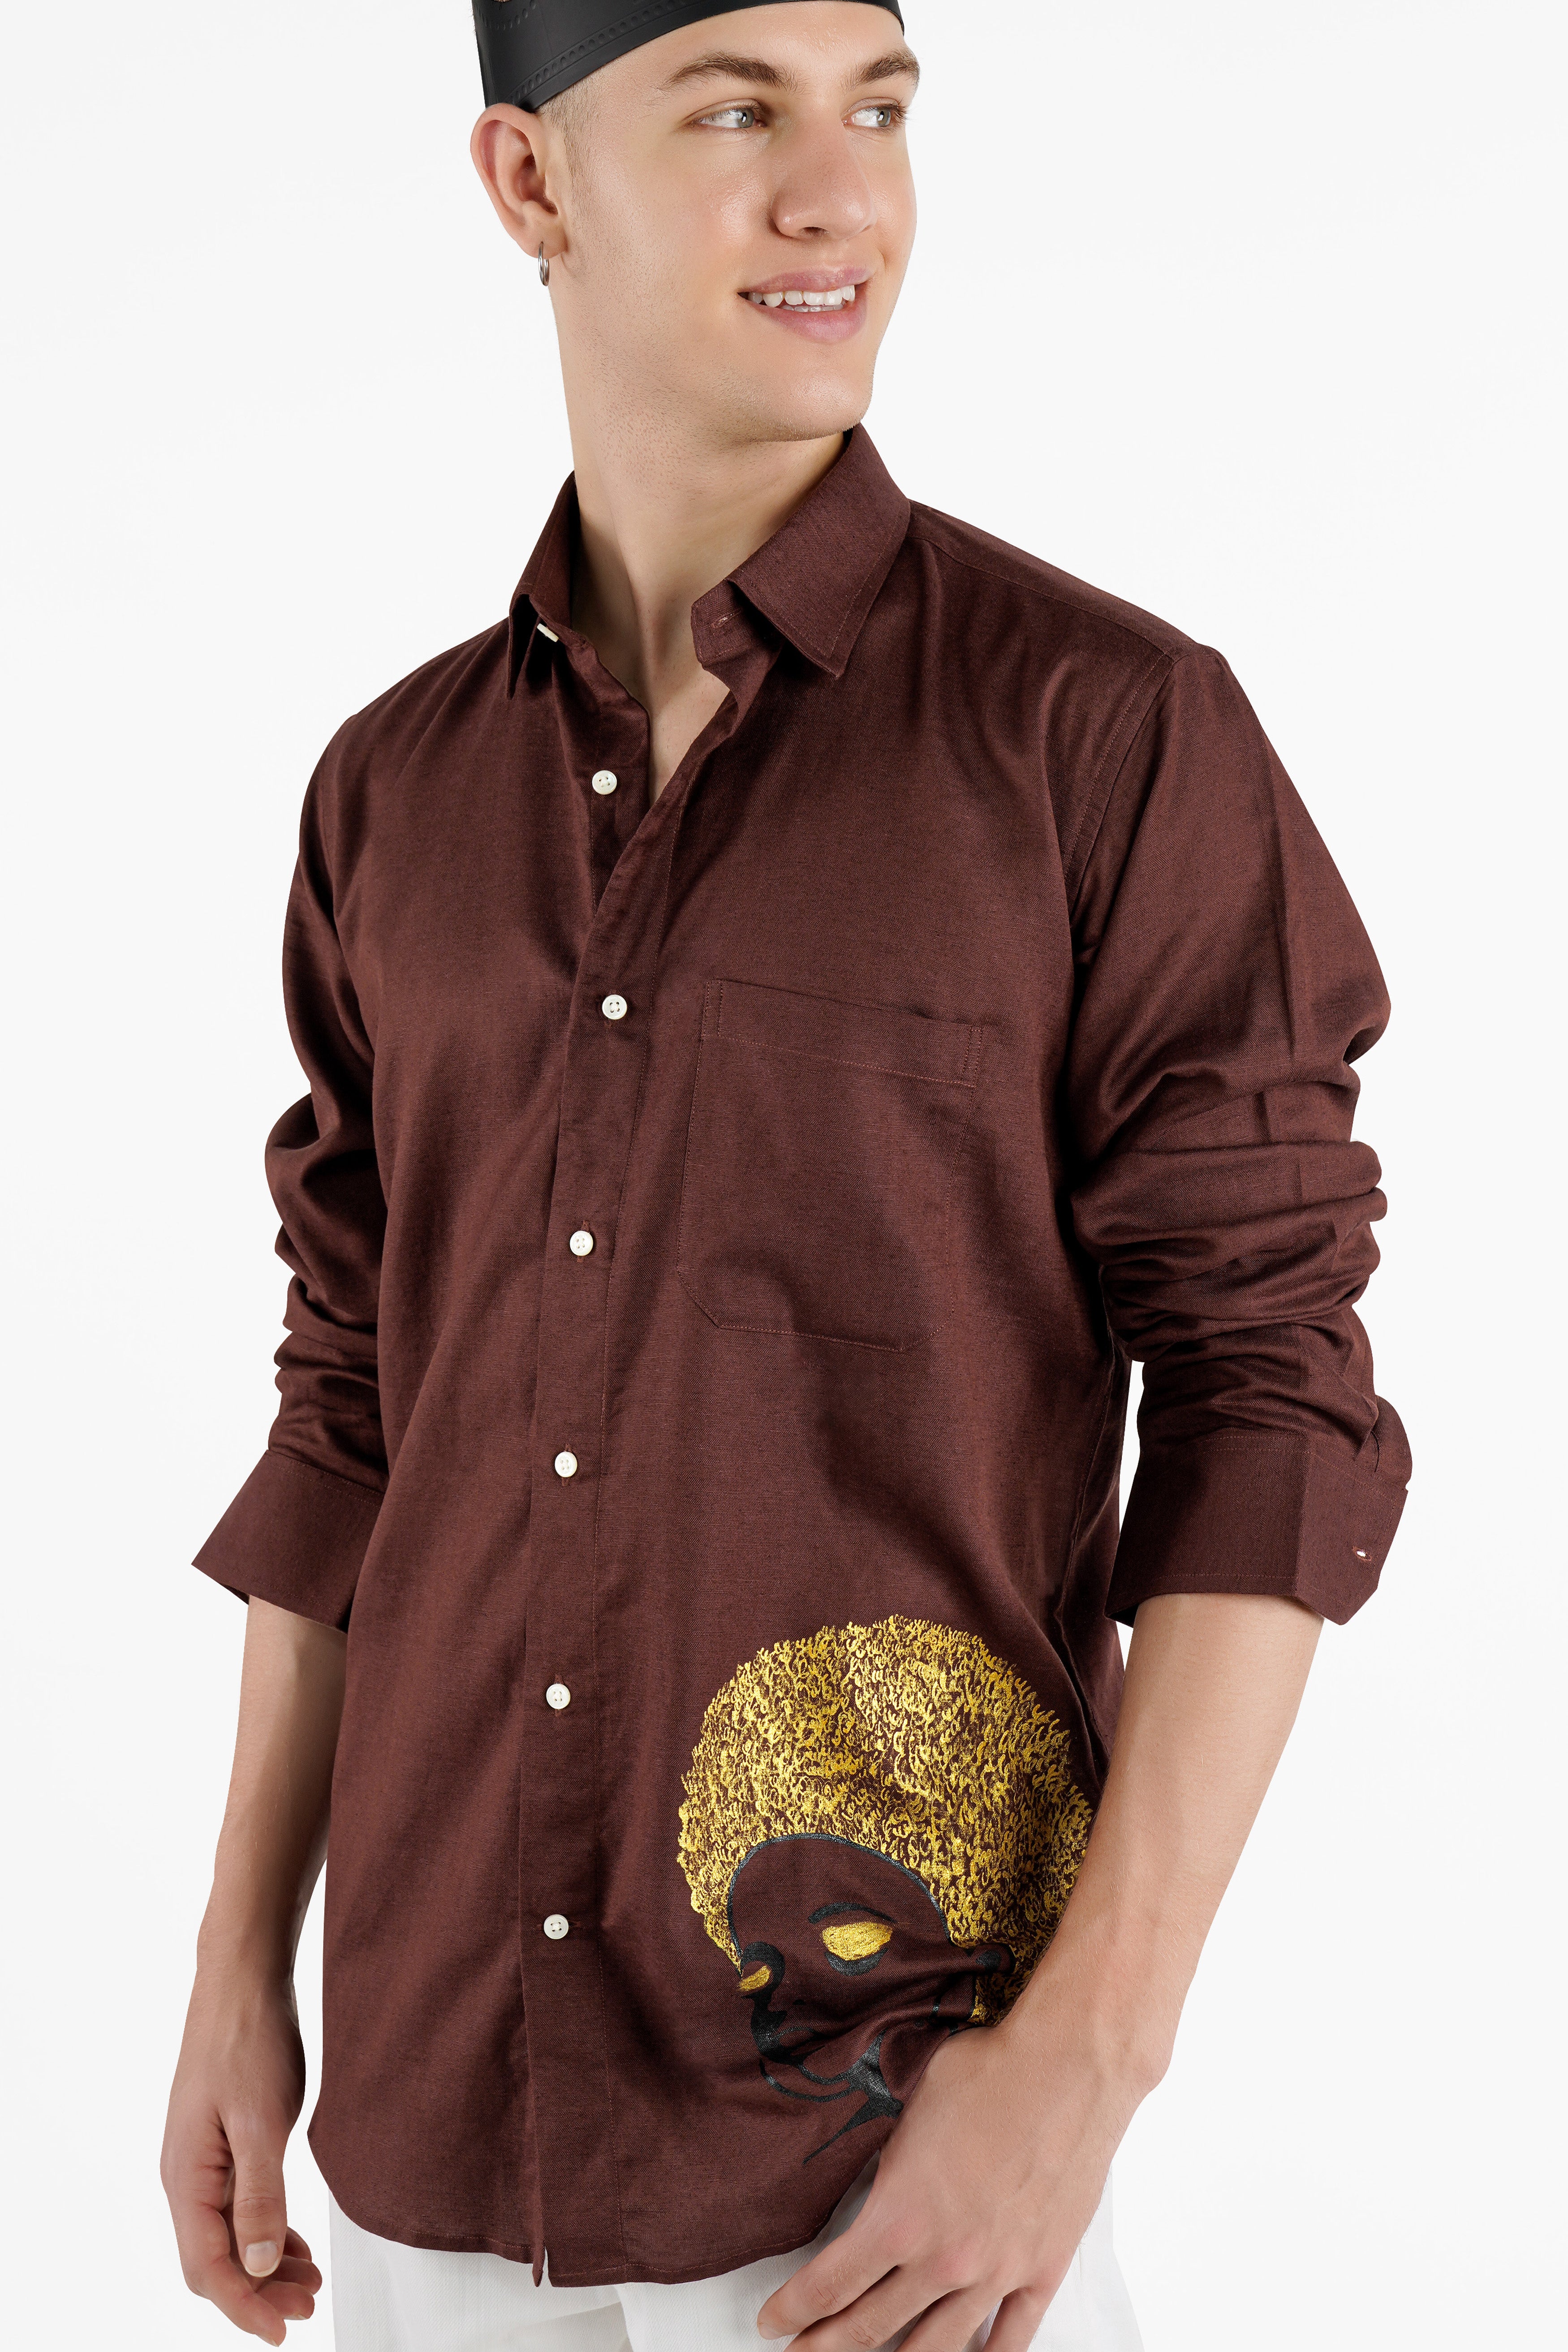 Bistre Brown Hand Painted Luxurious Linen Designer Shirt